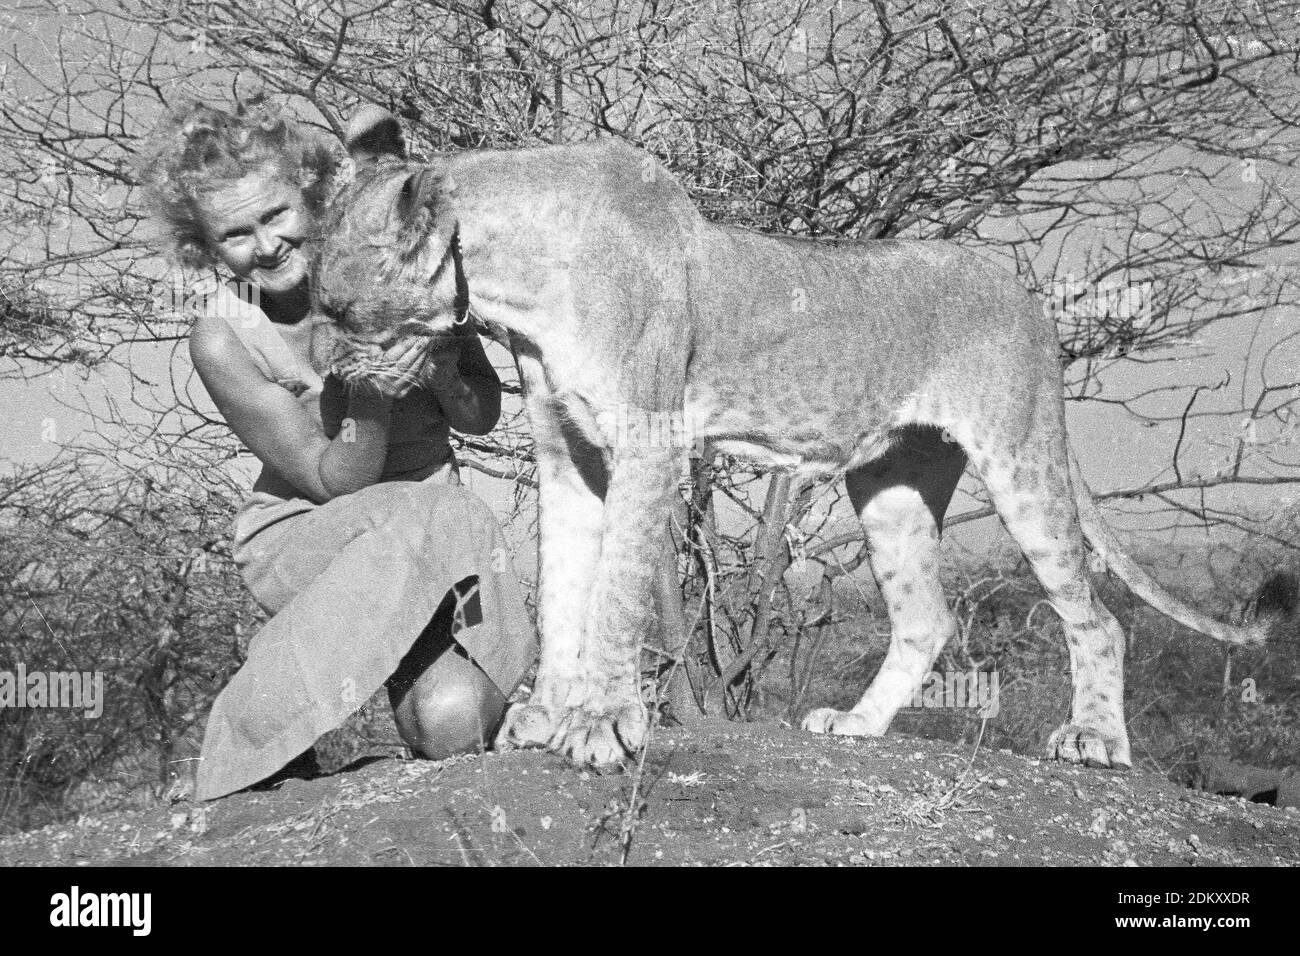 Joy Adamson autor de Born Free wqith Elsa la leioness en Kenia. Imágenes originales de Joy Adamson Born Free Photo Collection en su mayoría tomadas de 1940 a principios de 1960 en Kenia. Foto de stock